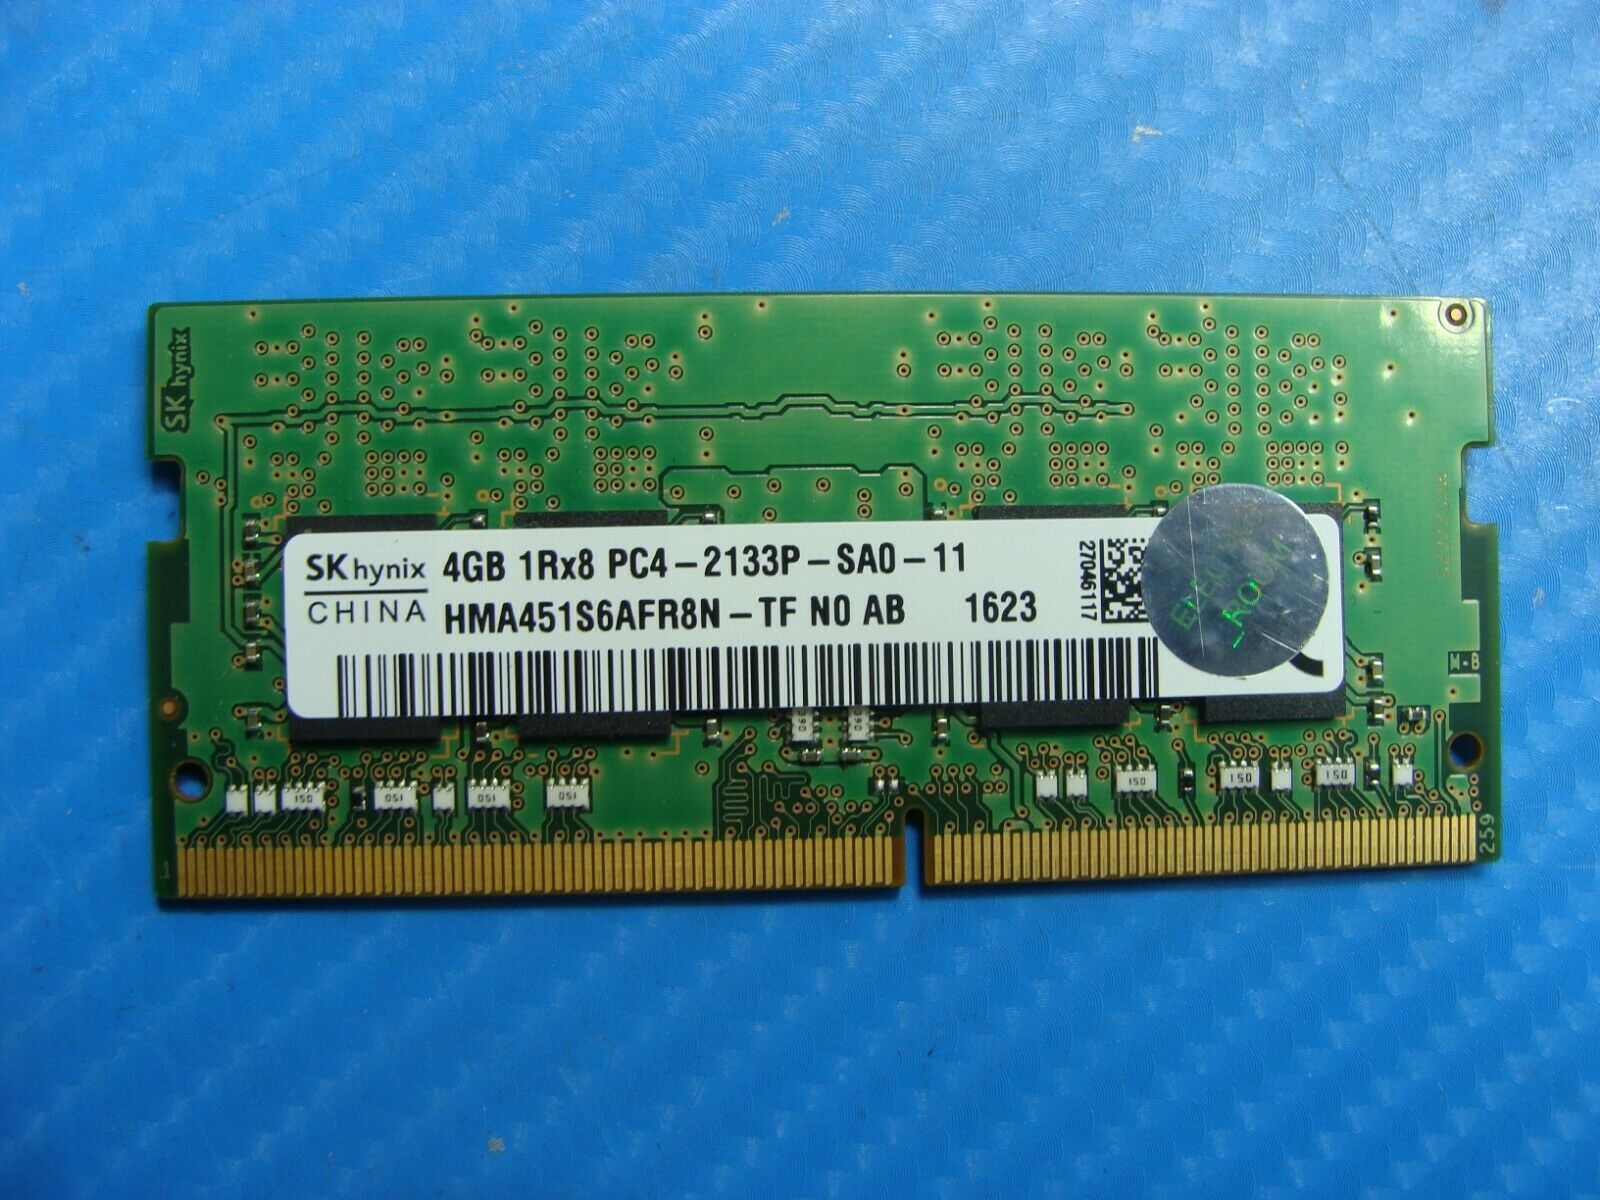 Dell E5570 So-Dimm SK Hynix 4GB 1Rx8 Memory pc4-2133p-sa0-11